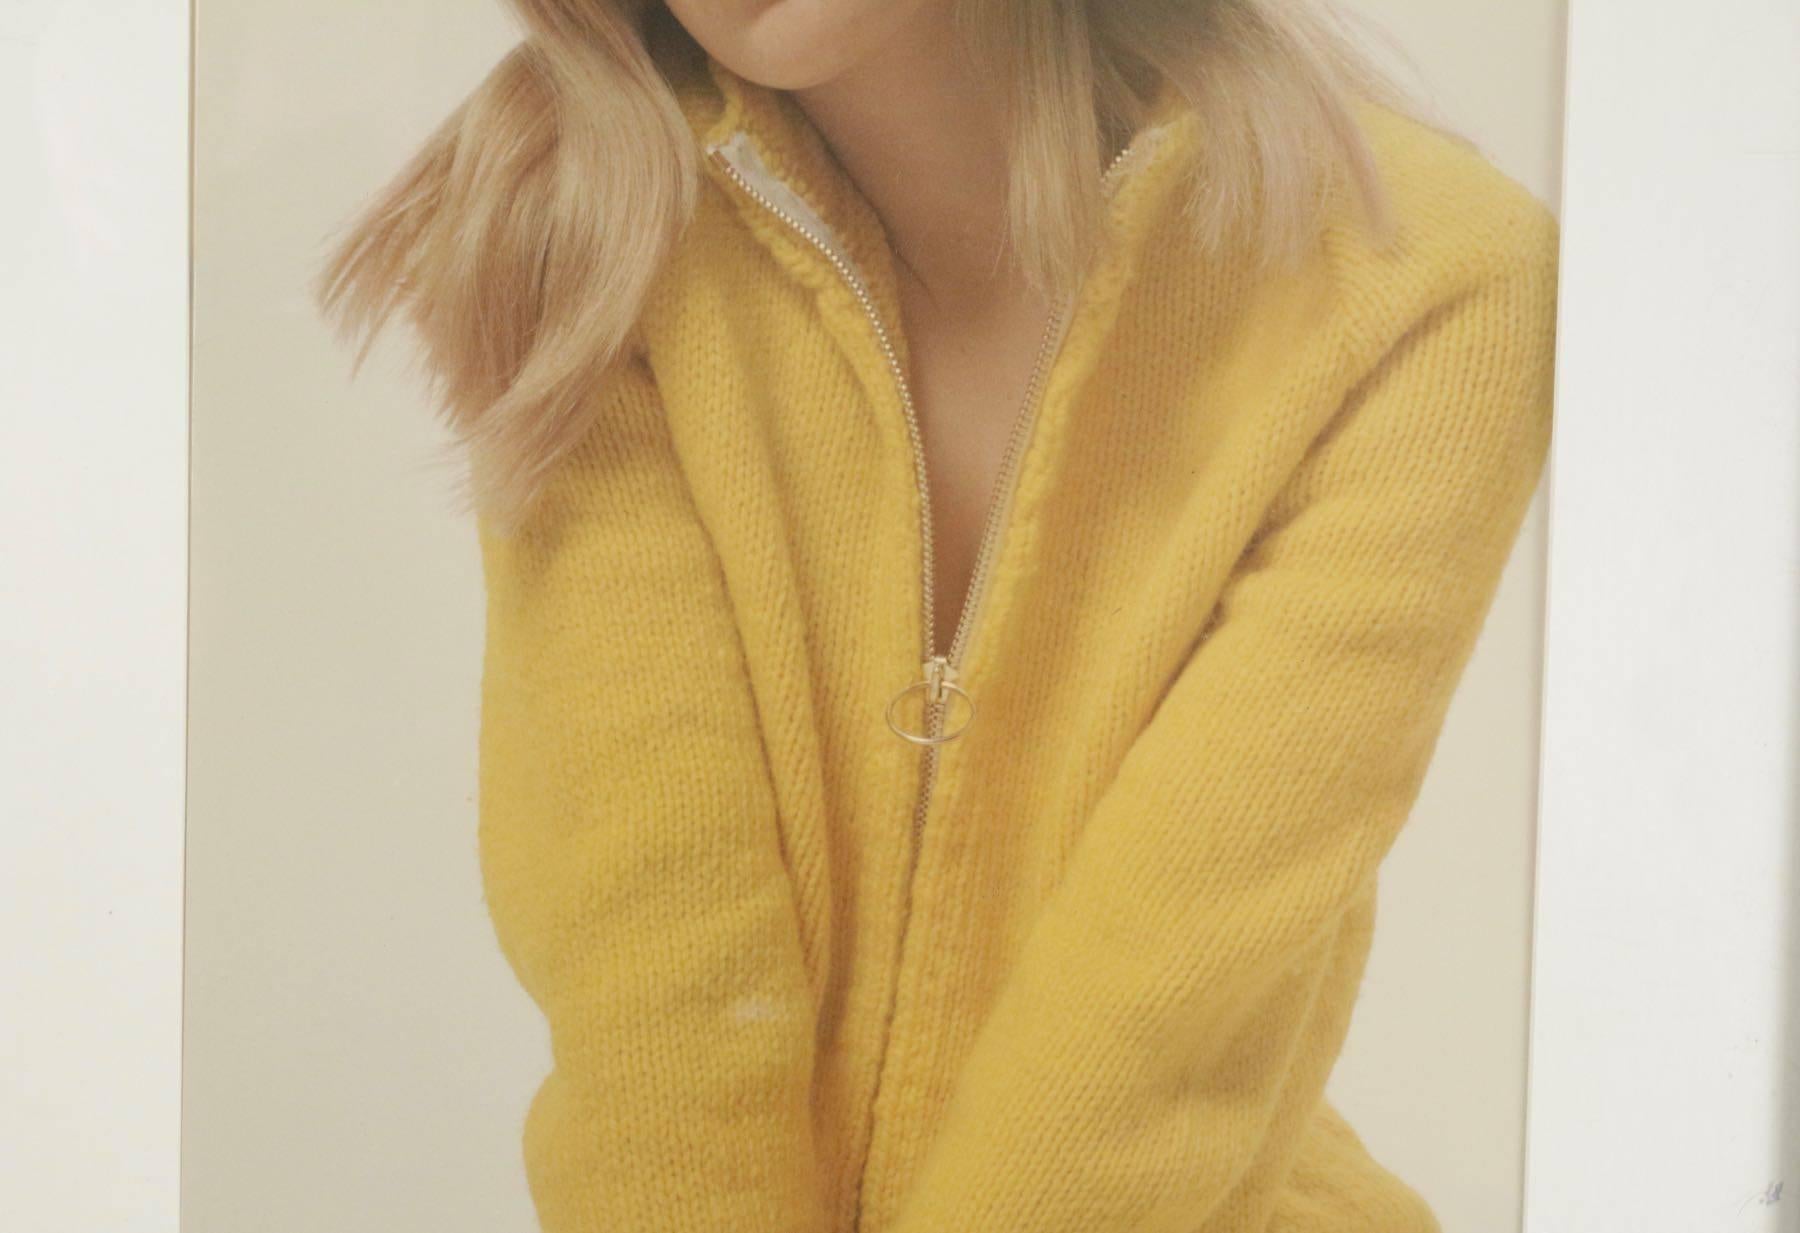 Photographie de mode originale du photographe Robert Jean Chapuis, Paris, signée, représentant une jeune fille portant un pull jaune, vers les années 1970.
Mesures :
Sans cadre 49,5 cm x 35 cm,
avec cadre 68 cm x 54 cm.
  